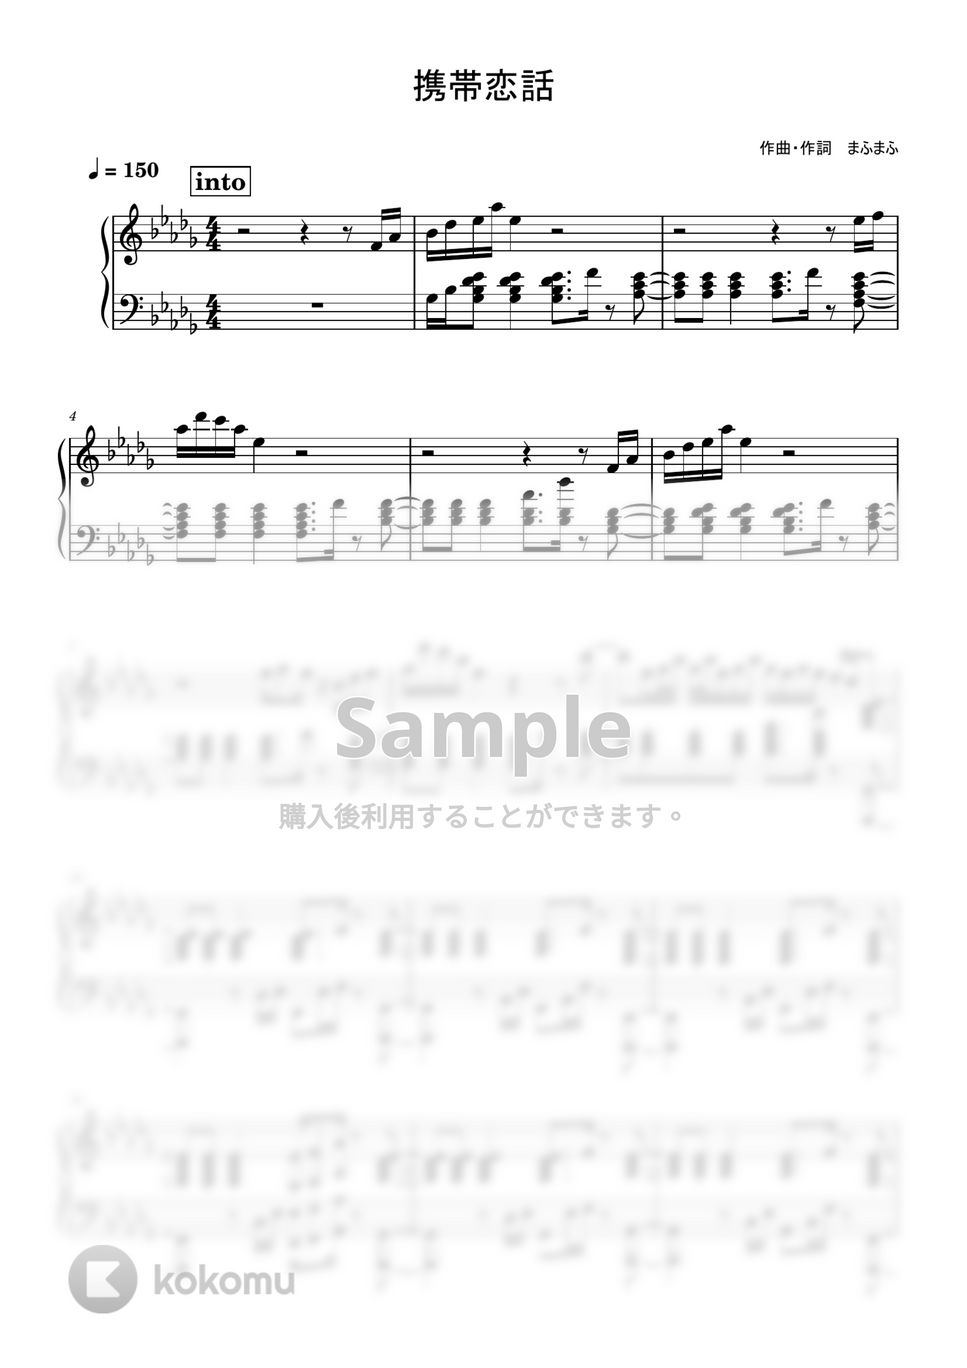 まふまふ - 携帯恋話 (ピアノ伴奏) by コトノハ